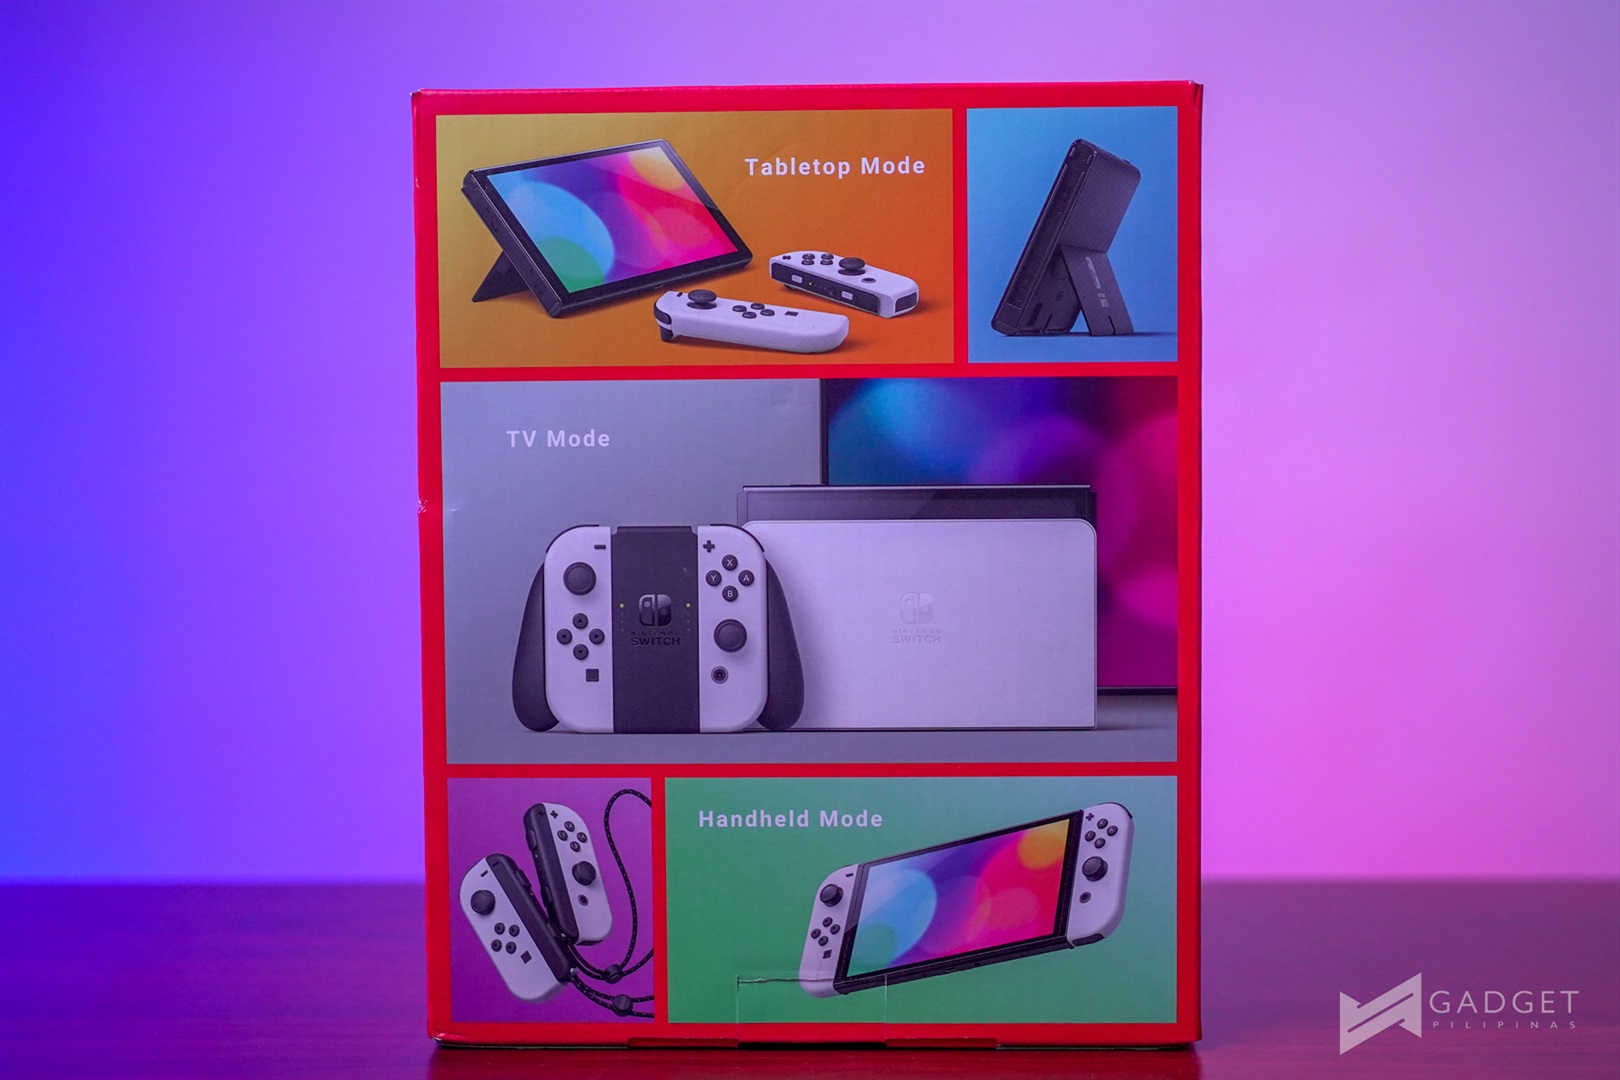 Nintendo Switch x Switch OLED x Switch Lite: todas as diferenças entre os  consoles, Guia de Compras